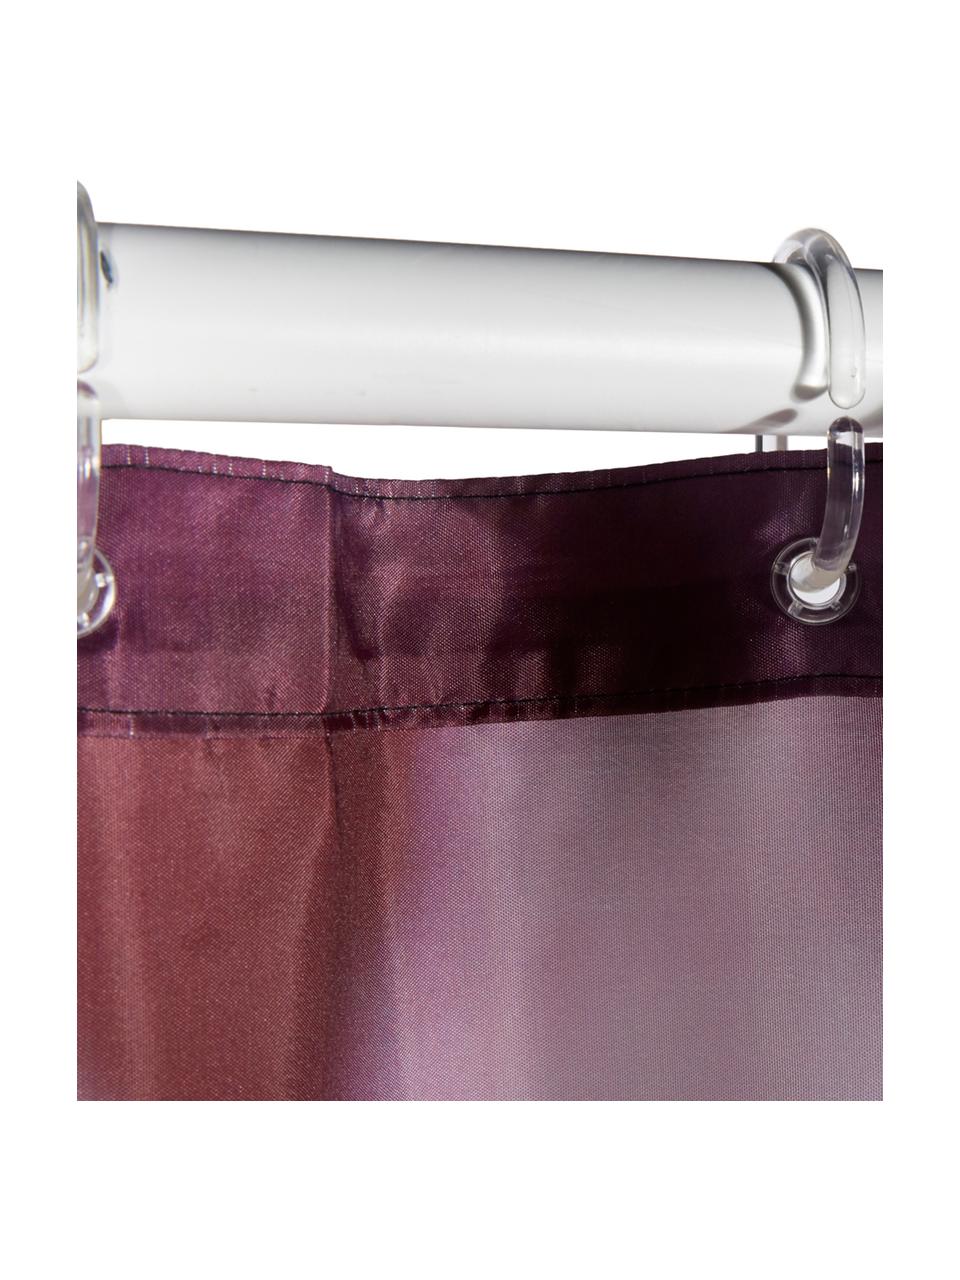 Tenda da doccia con motivo floreale Rosemarie, 100% poliestere
Idrorepellente non impermeabile, Nero, tonalità rosa, Larg. 180 x Lung. 200 cm